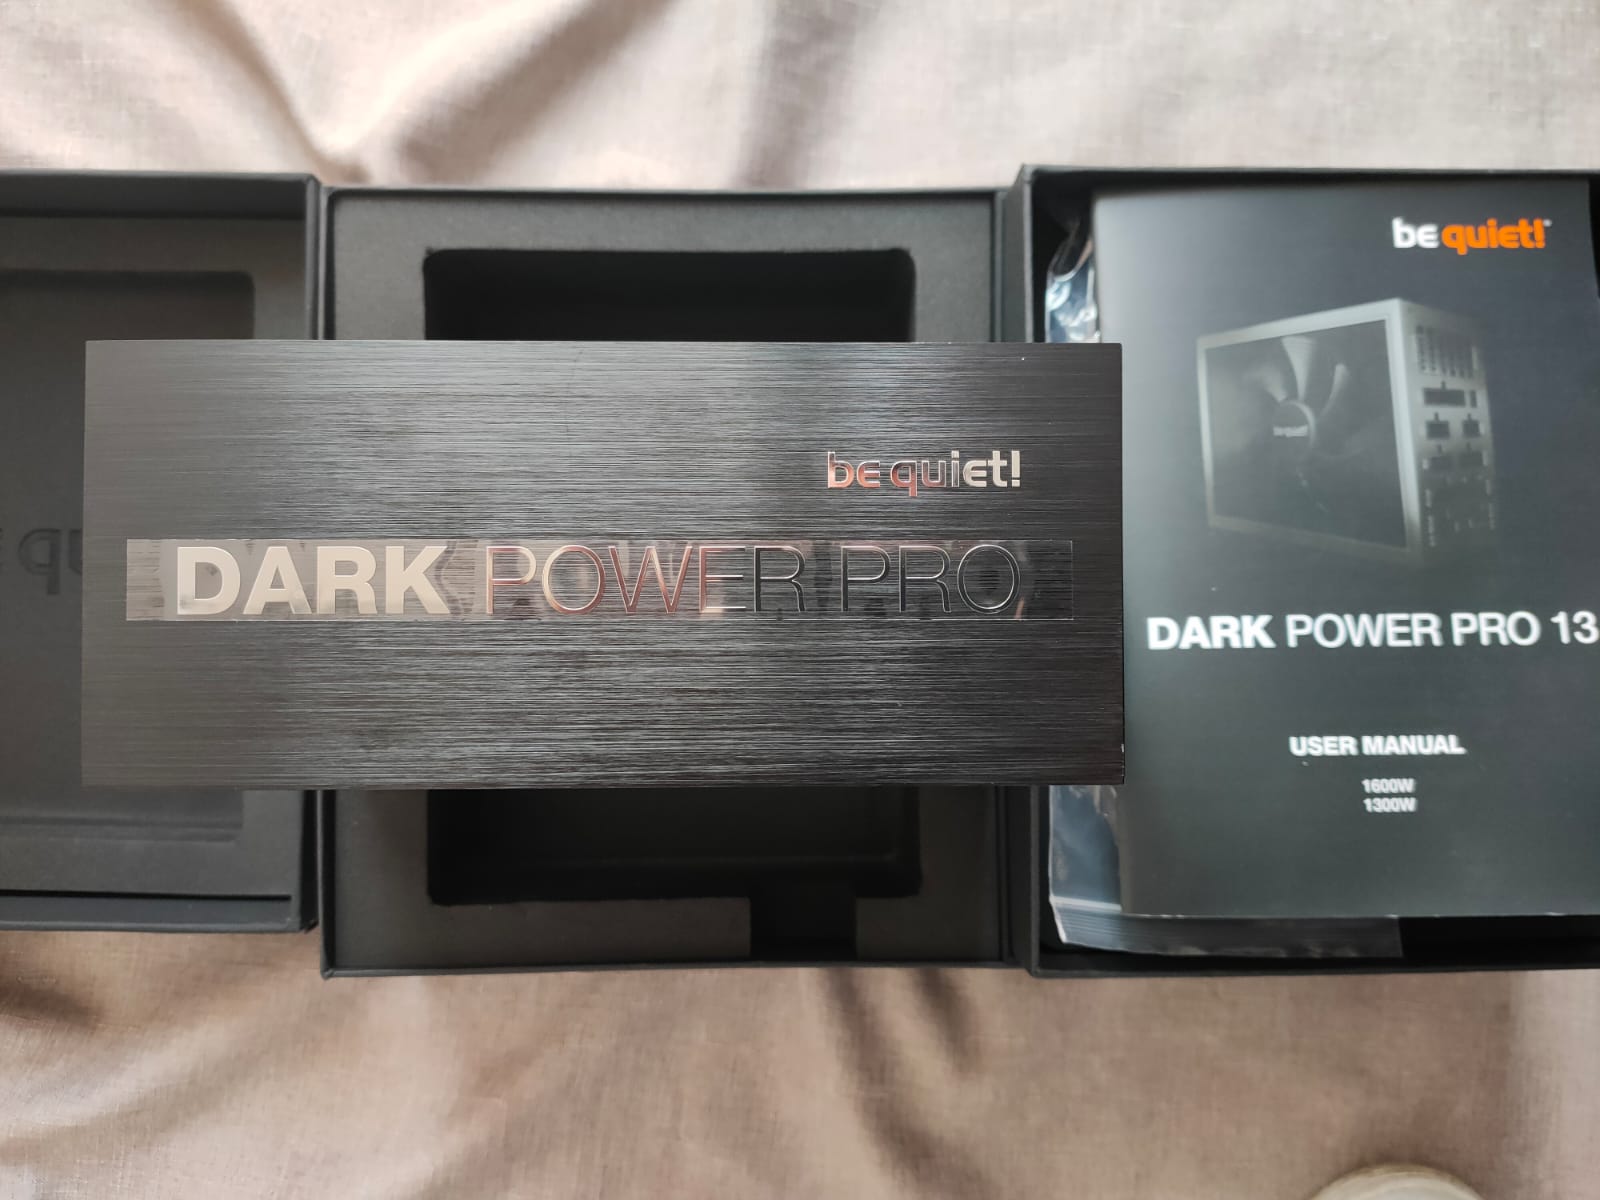 Recensione Dark Power Pro 13: be quiet! si adatta ai nuovi standard